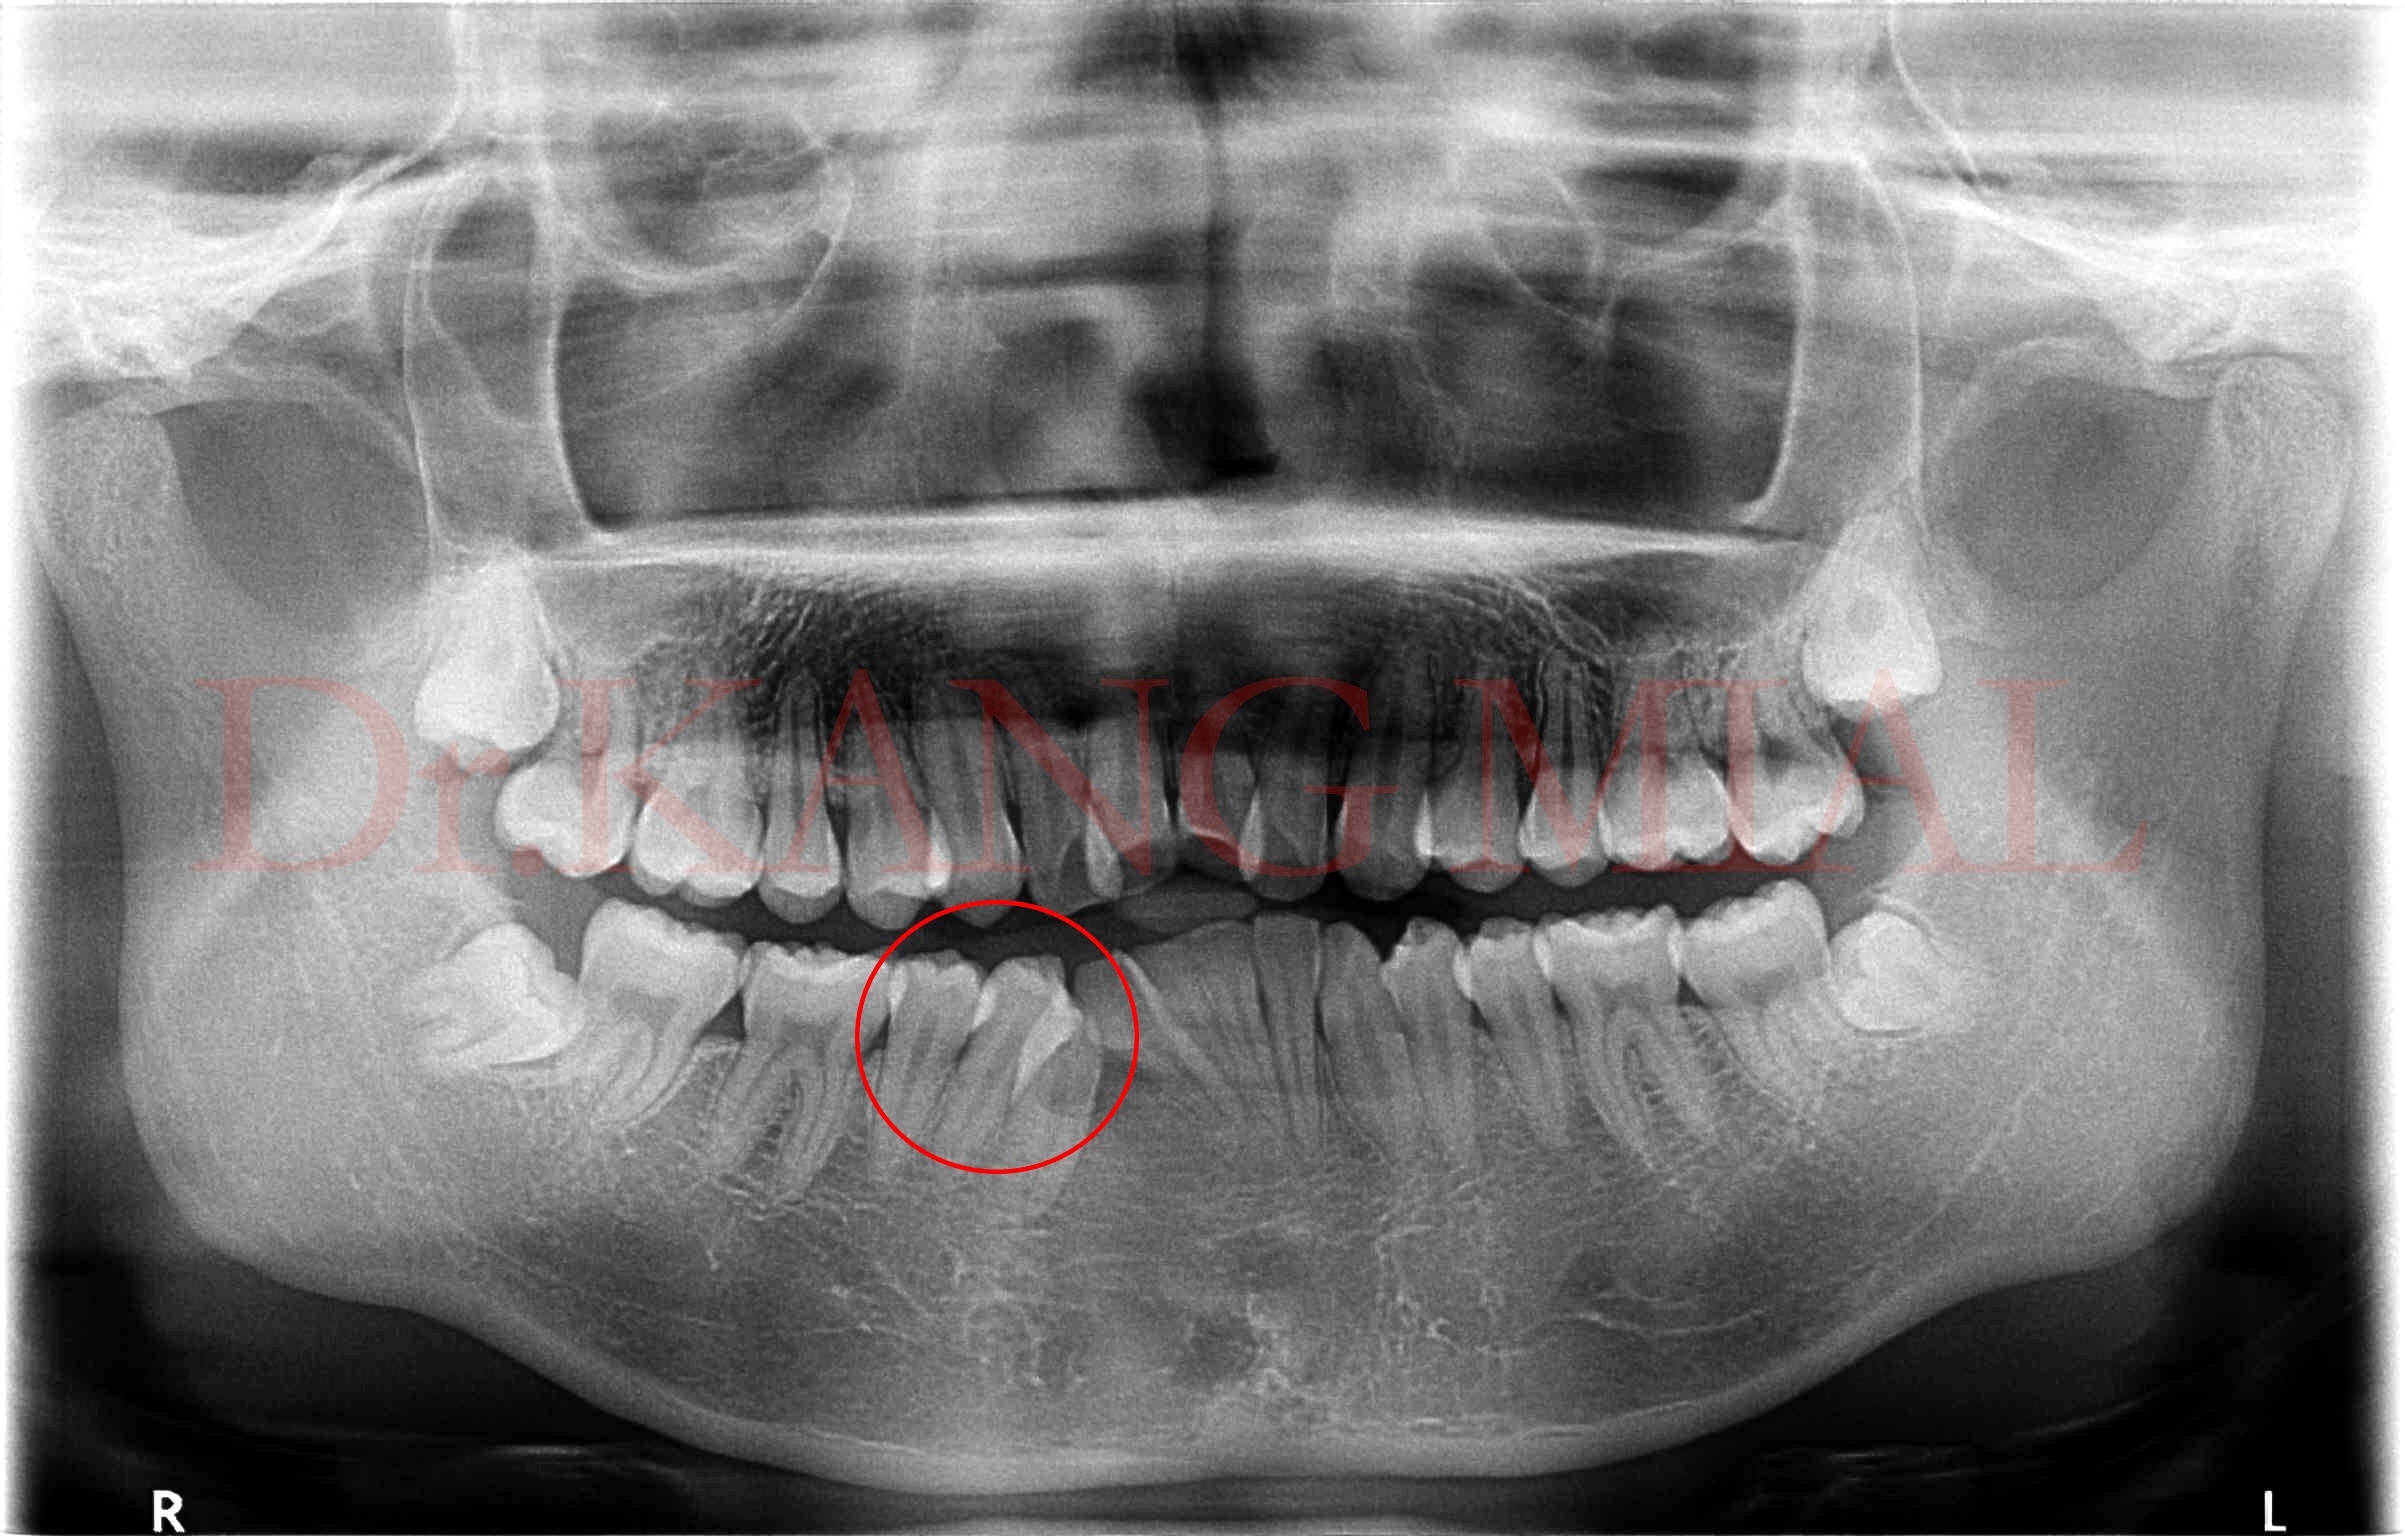 正常牙齿侧面图 x光片图片